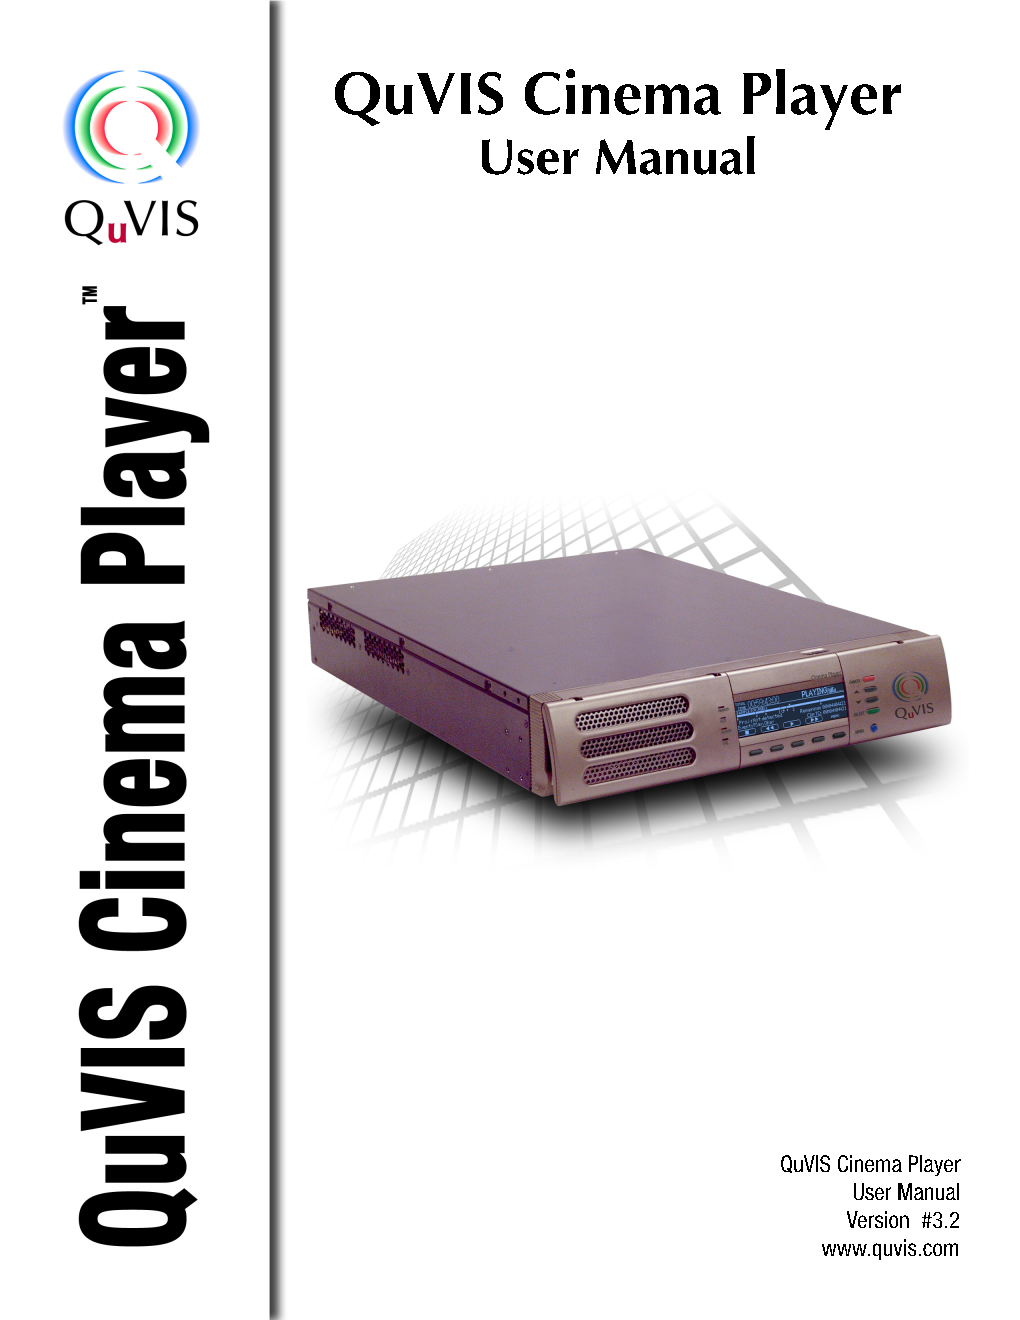 Quvis Cinema Player User Manual – Preliminary